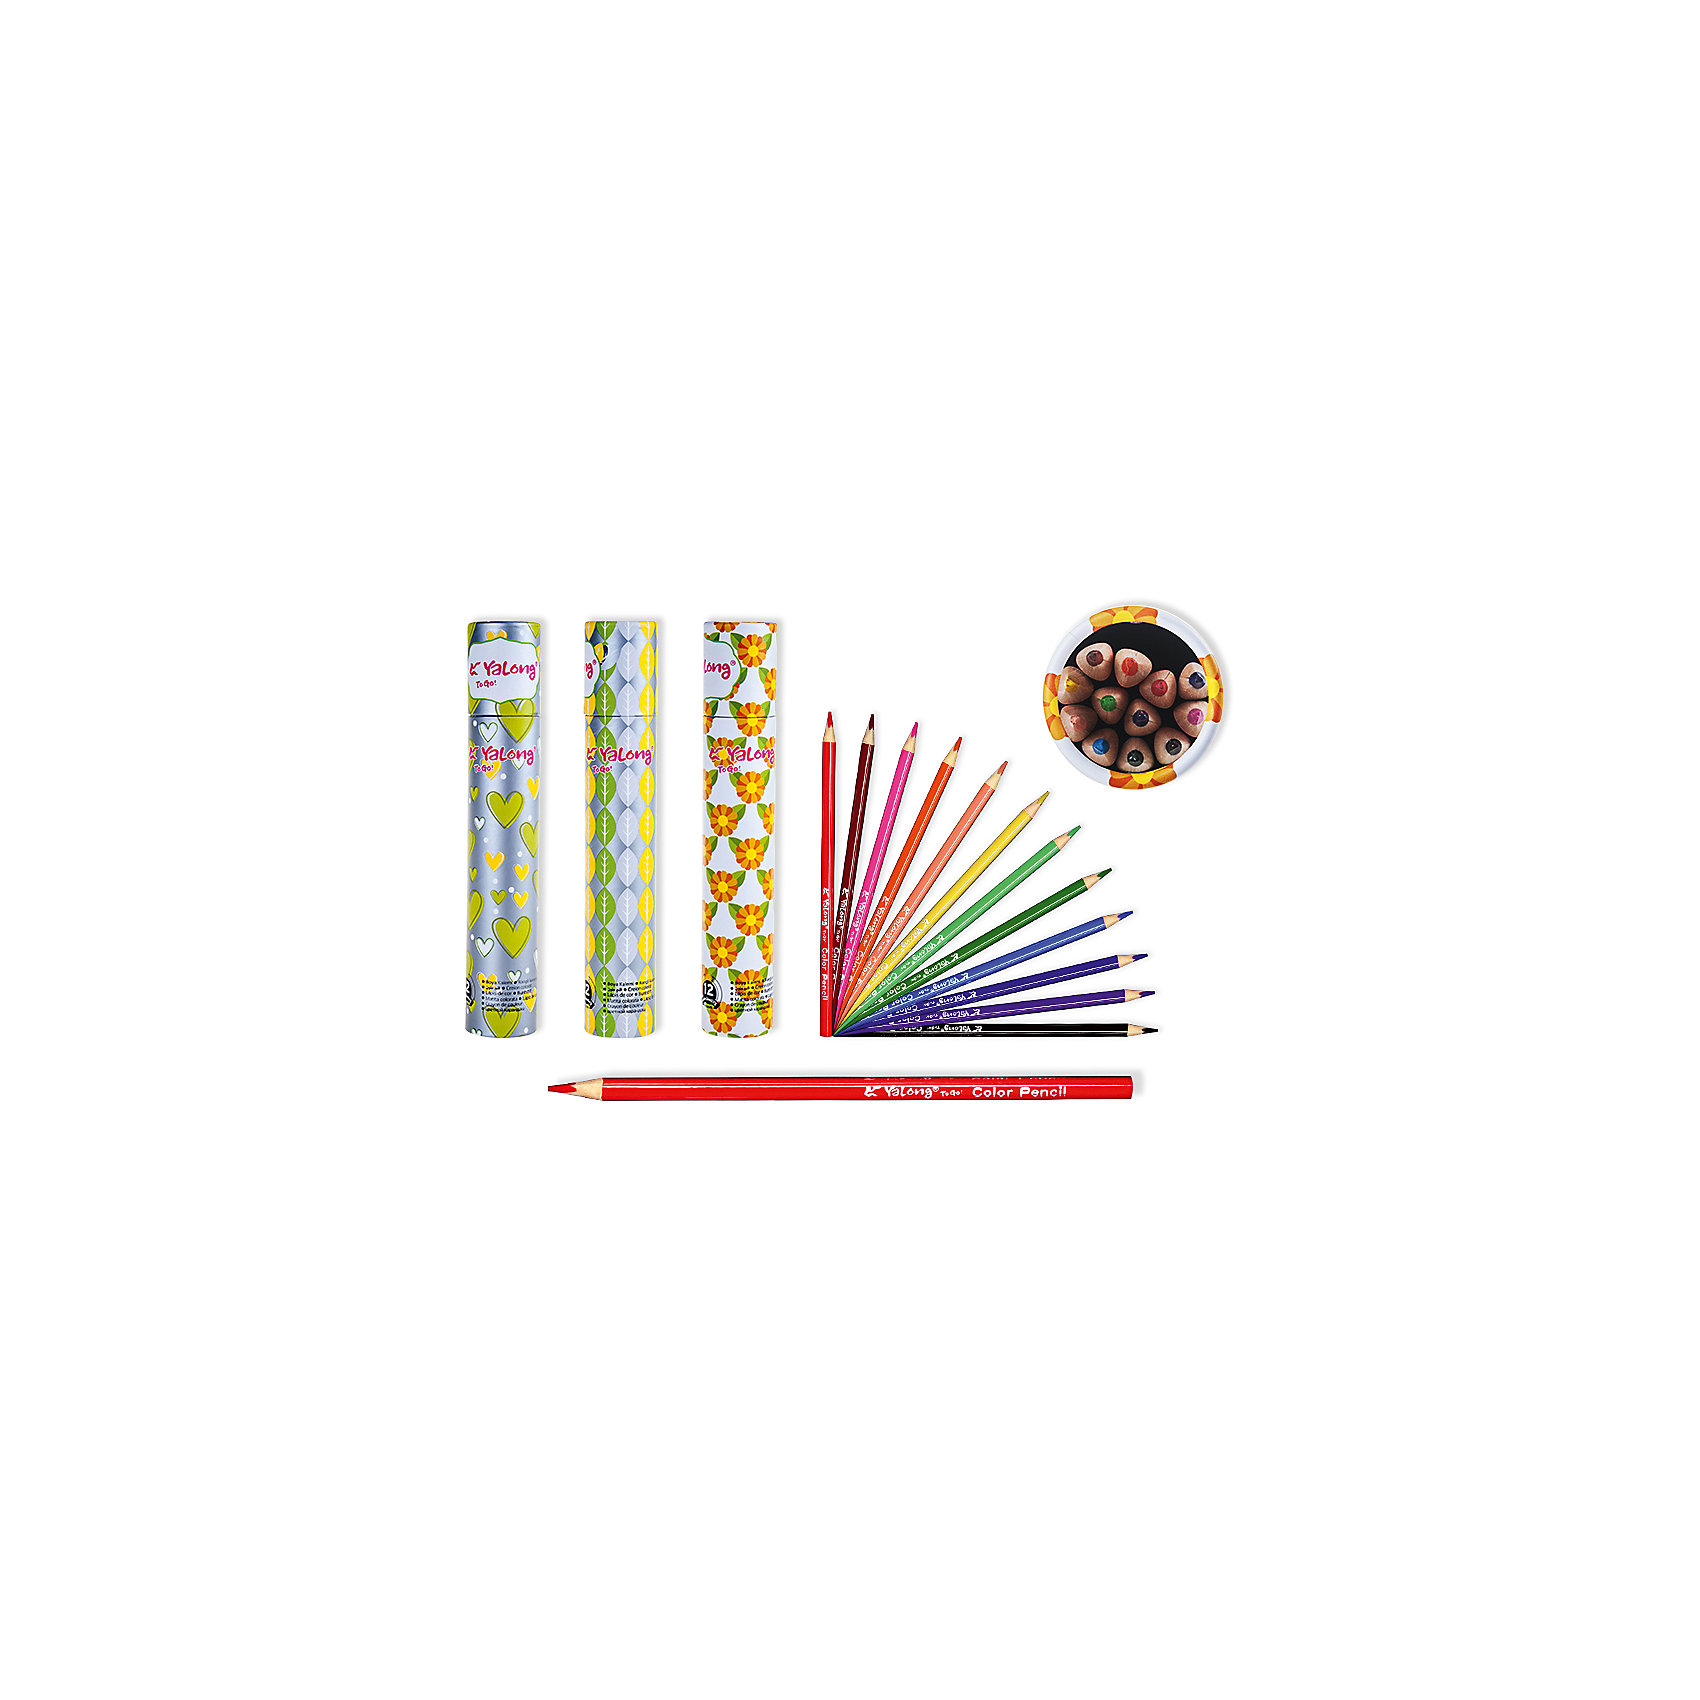 Цветные карандаши в тубе, 12 цветов (дизайн ассортименте) Schreiber 4993553